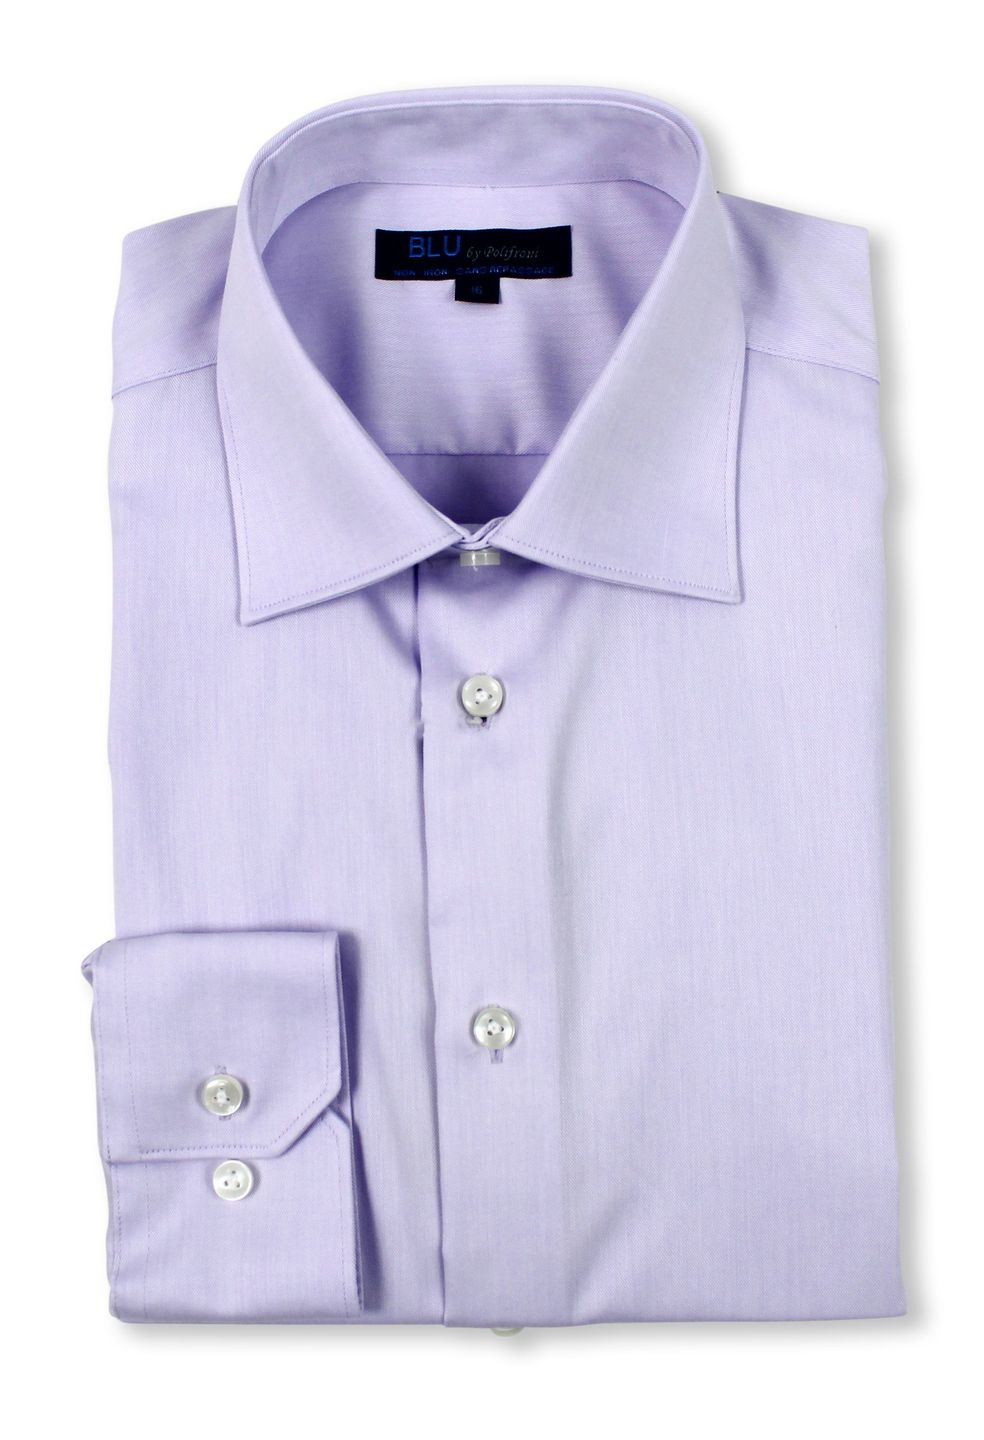 Blu by Polifroni Lavender Dress Shirt